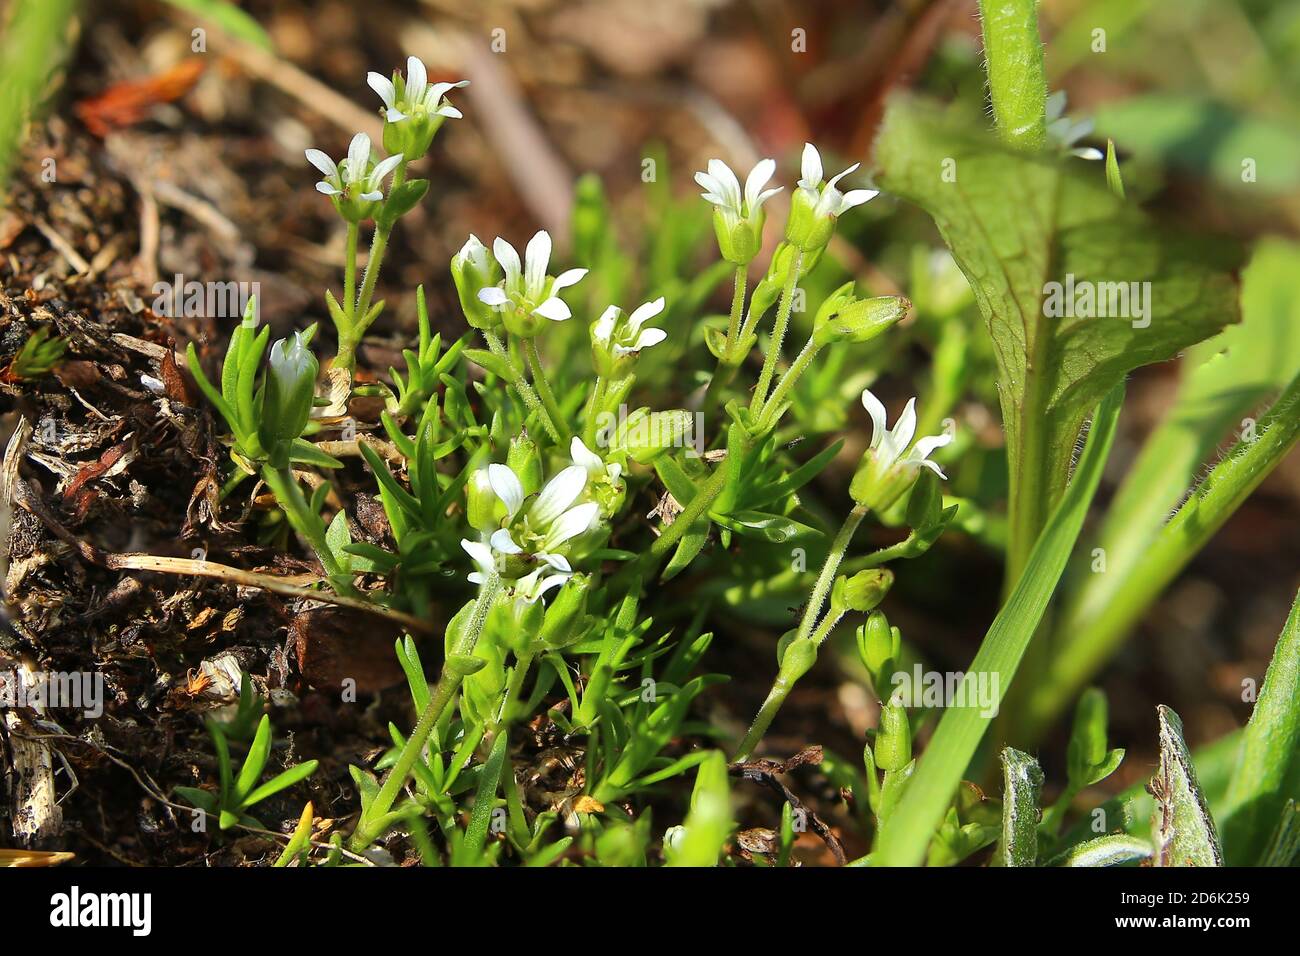 Minuartia biflora, also called the mountain sandwort. Stock Photo